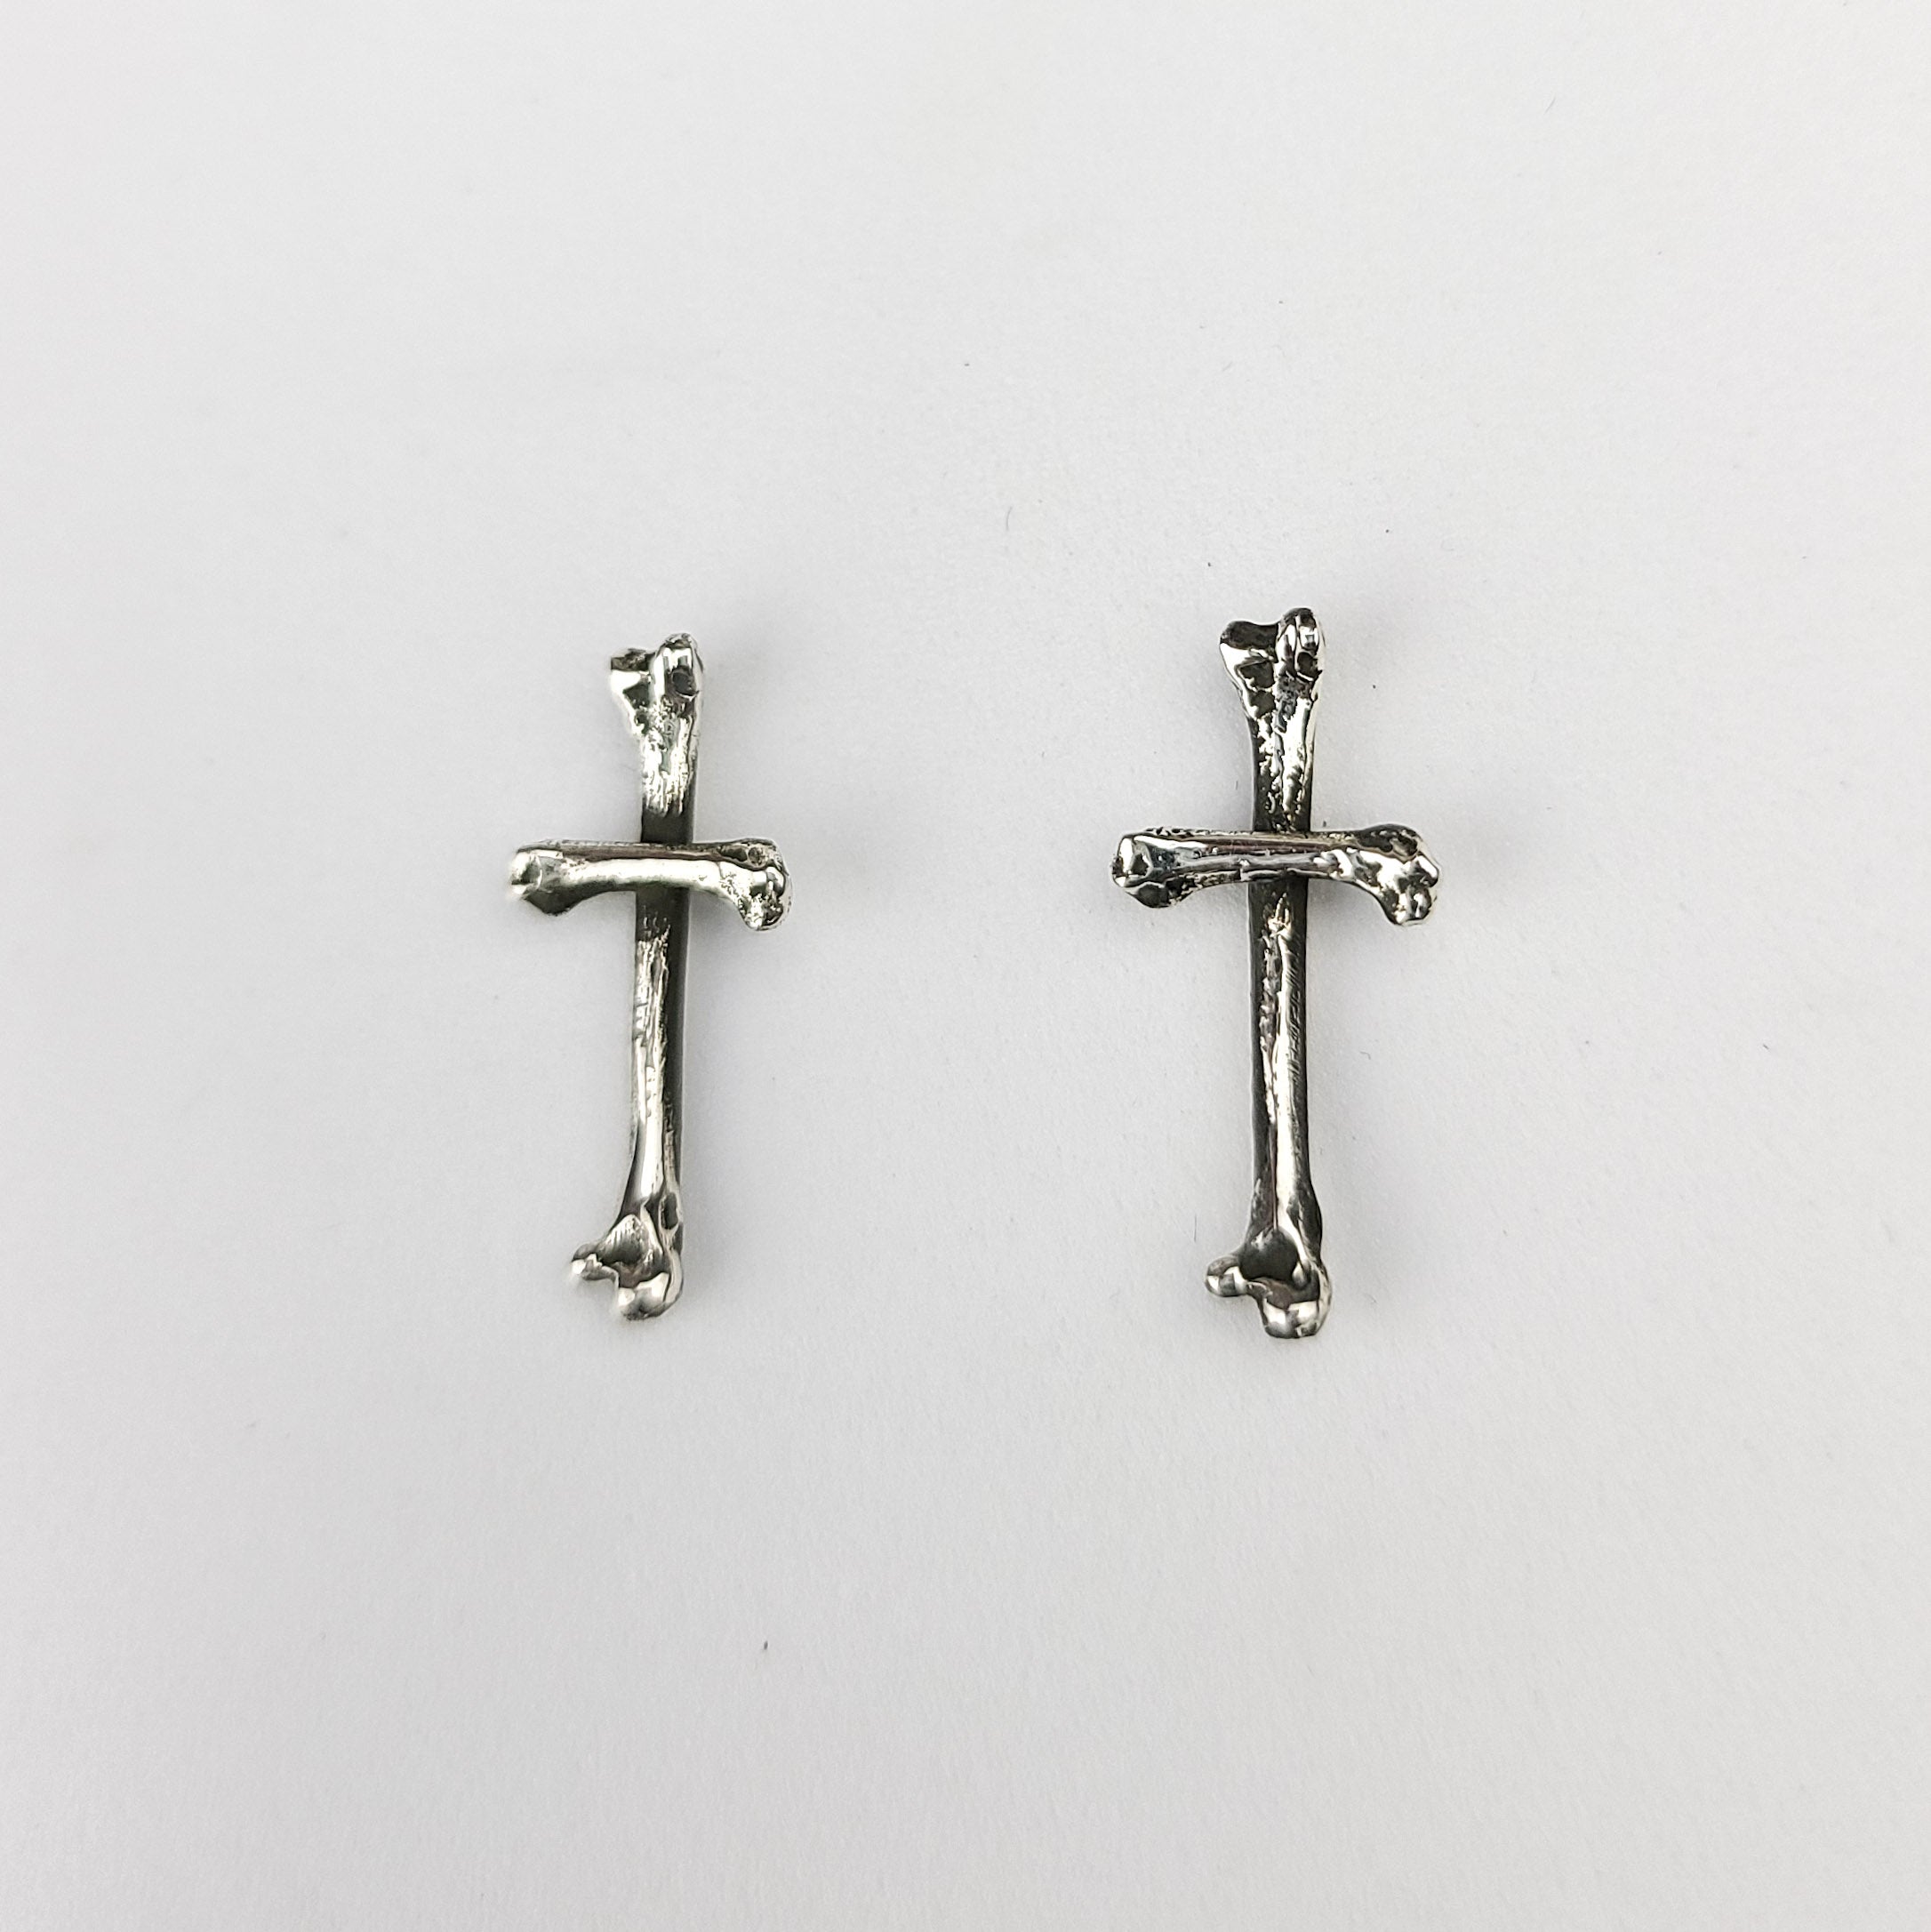 Small Bone Stud Earrings, Tiny Cross Earrings